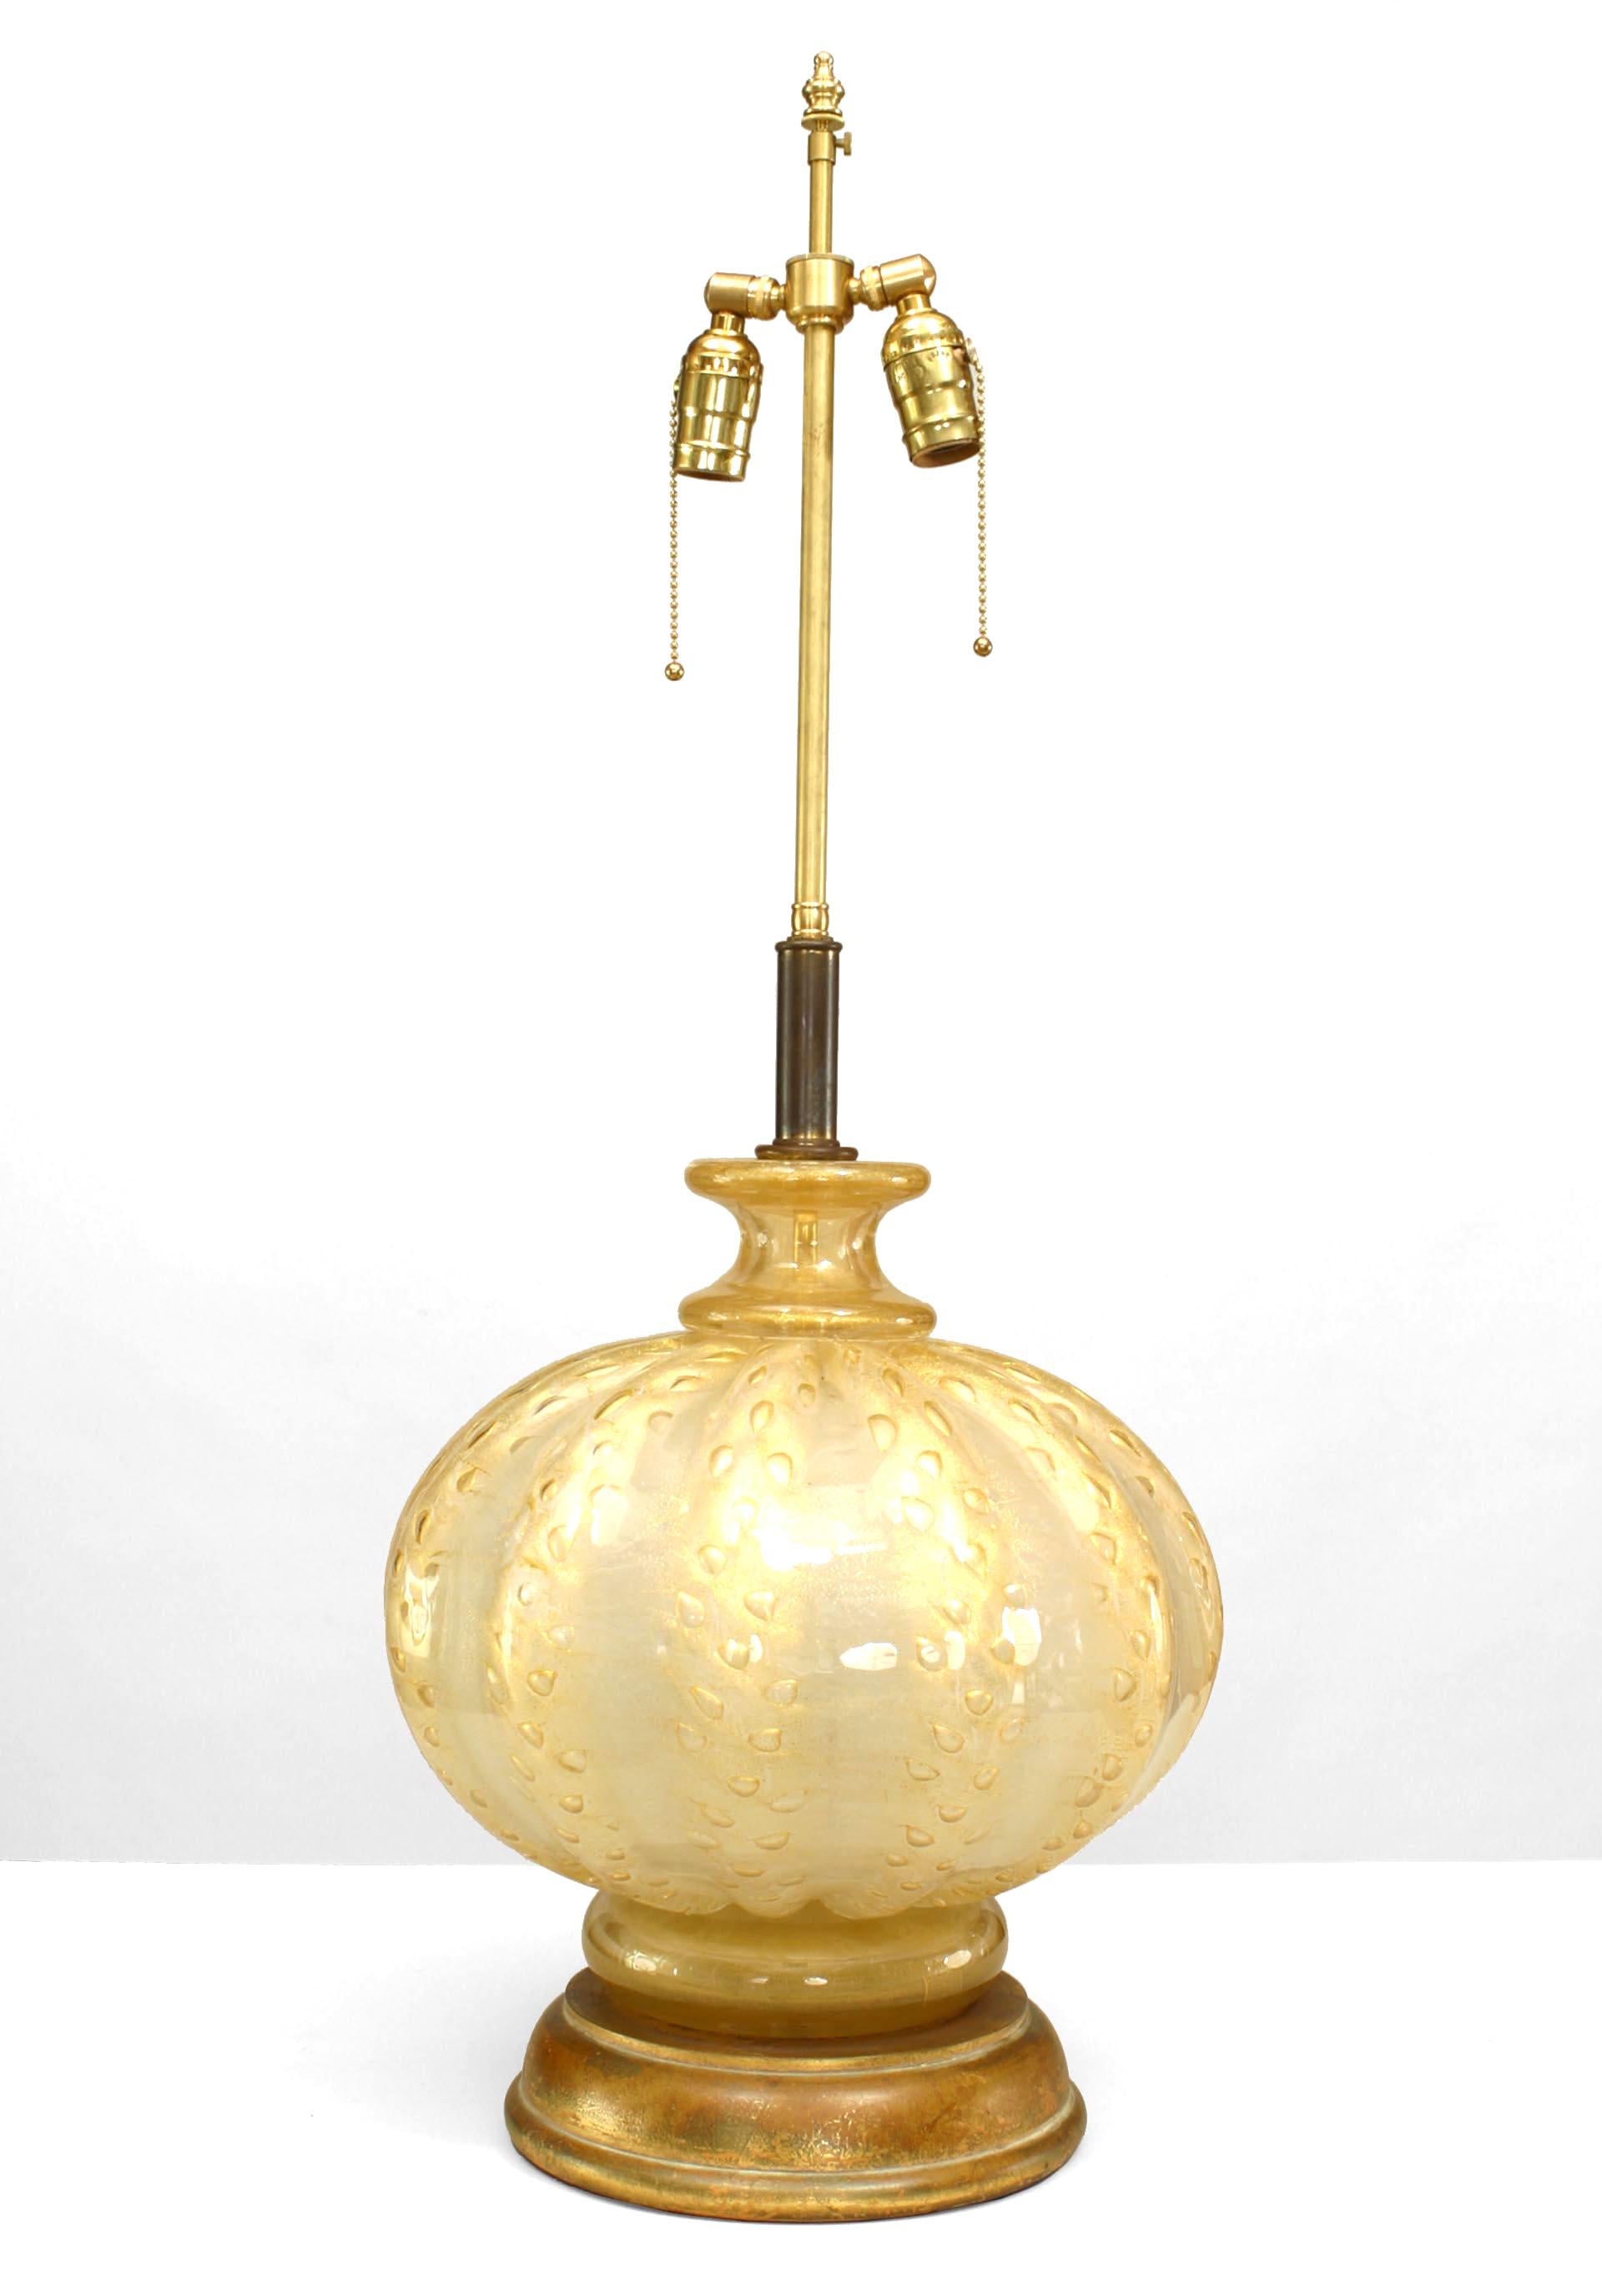 Grande lampe de table bulbeuse vénitienne des années 1940, en verre de Murano irisé et doré, avec des stries tonales et des bulles d'air, reposant sur une base ronde en bois doré.
